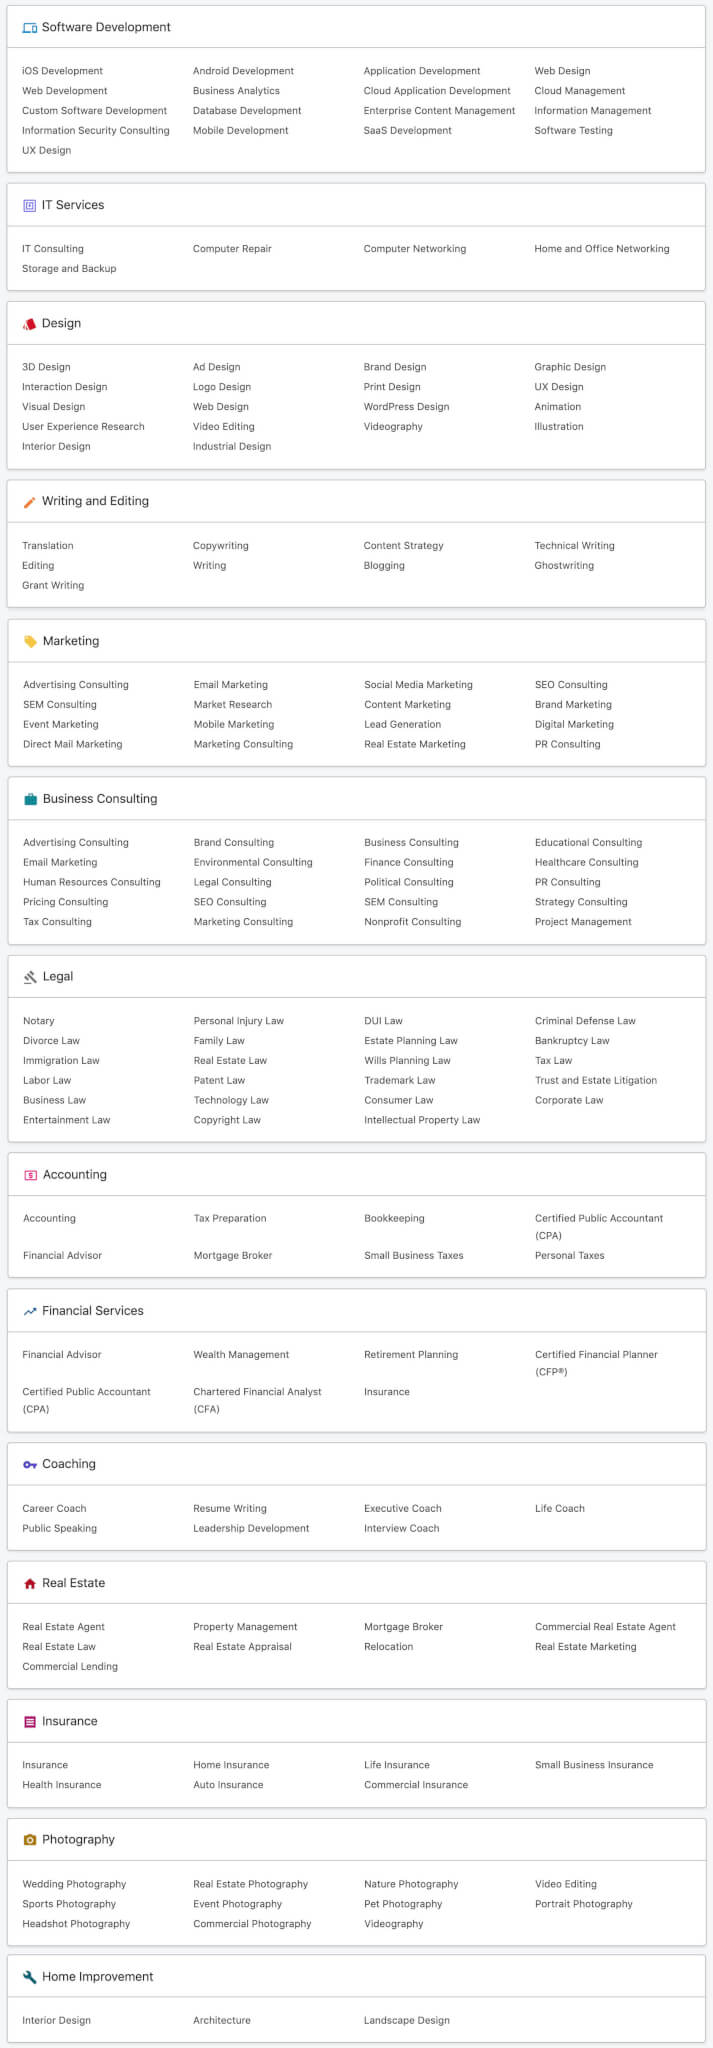 Linkedin Profinder All Service Categories